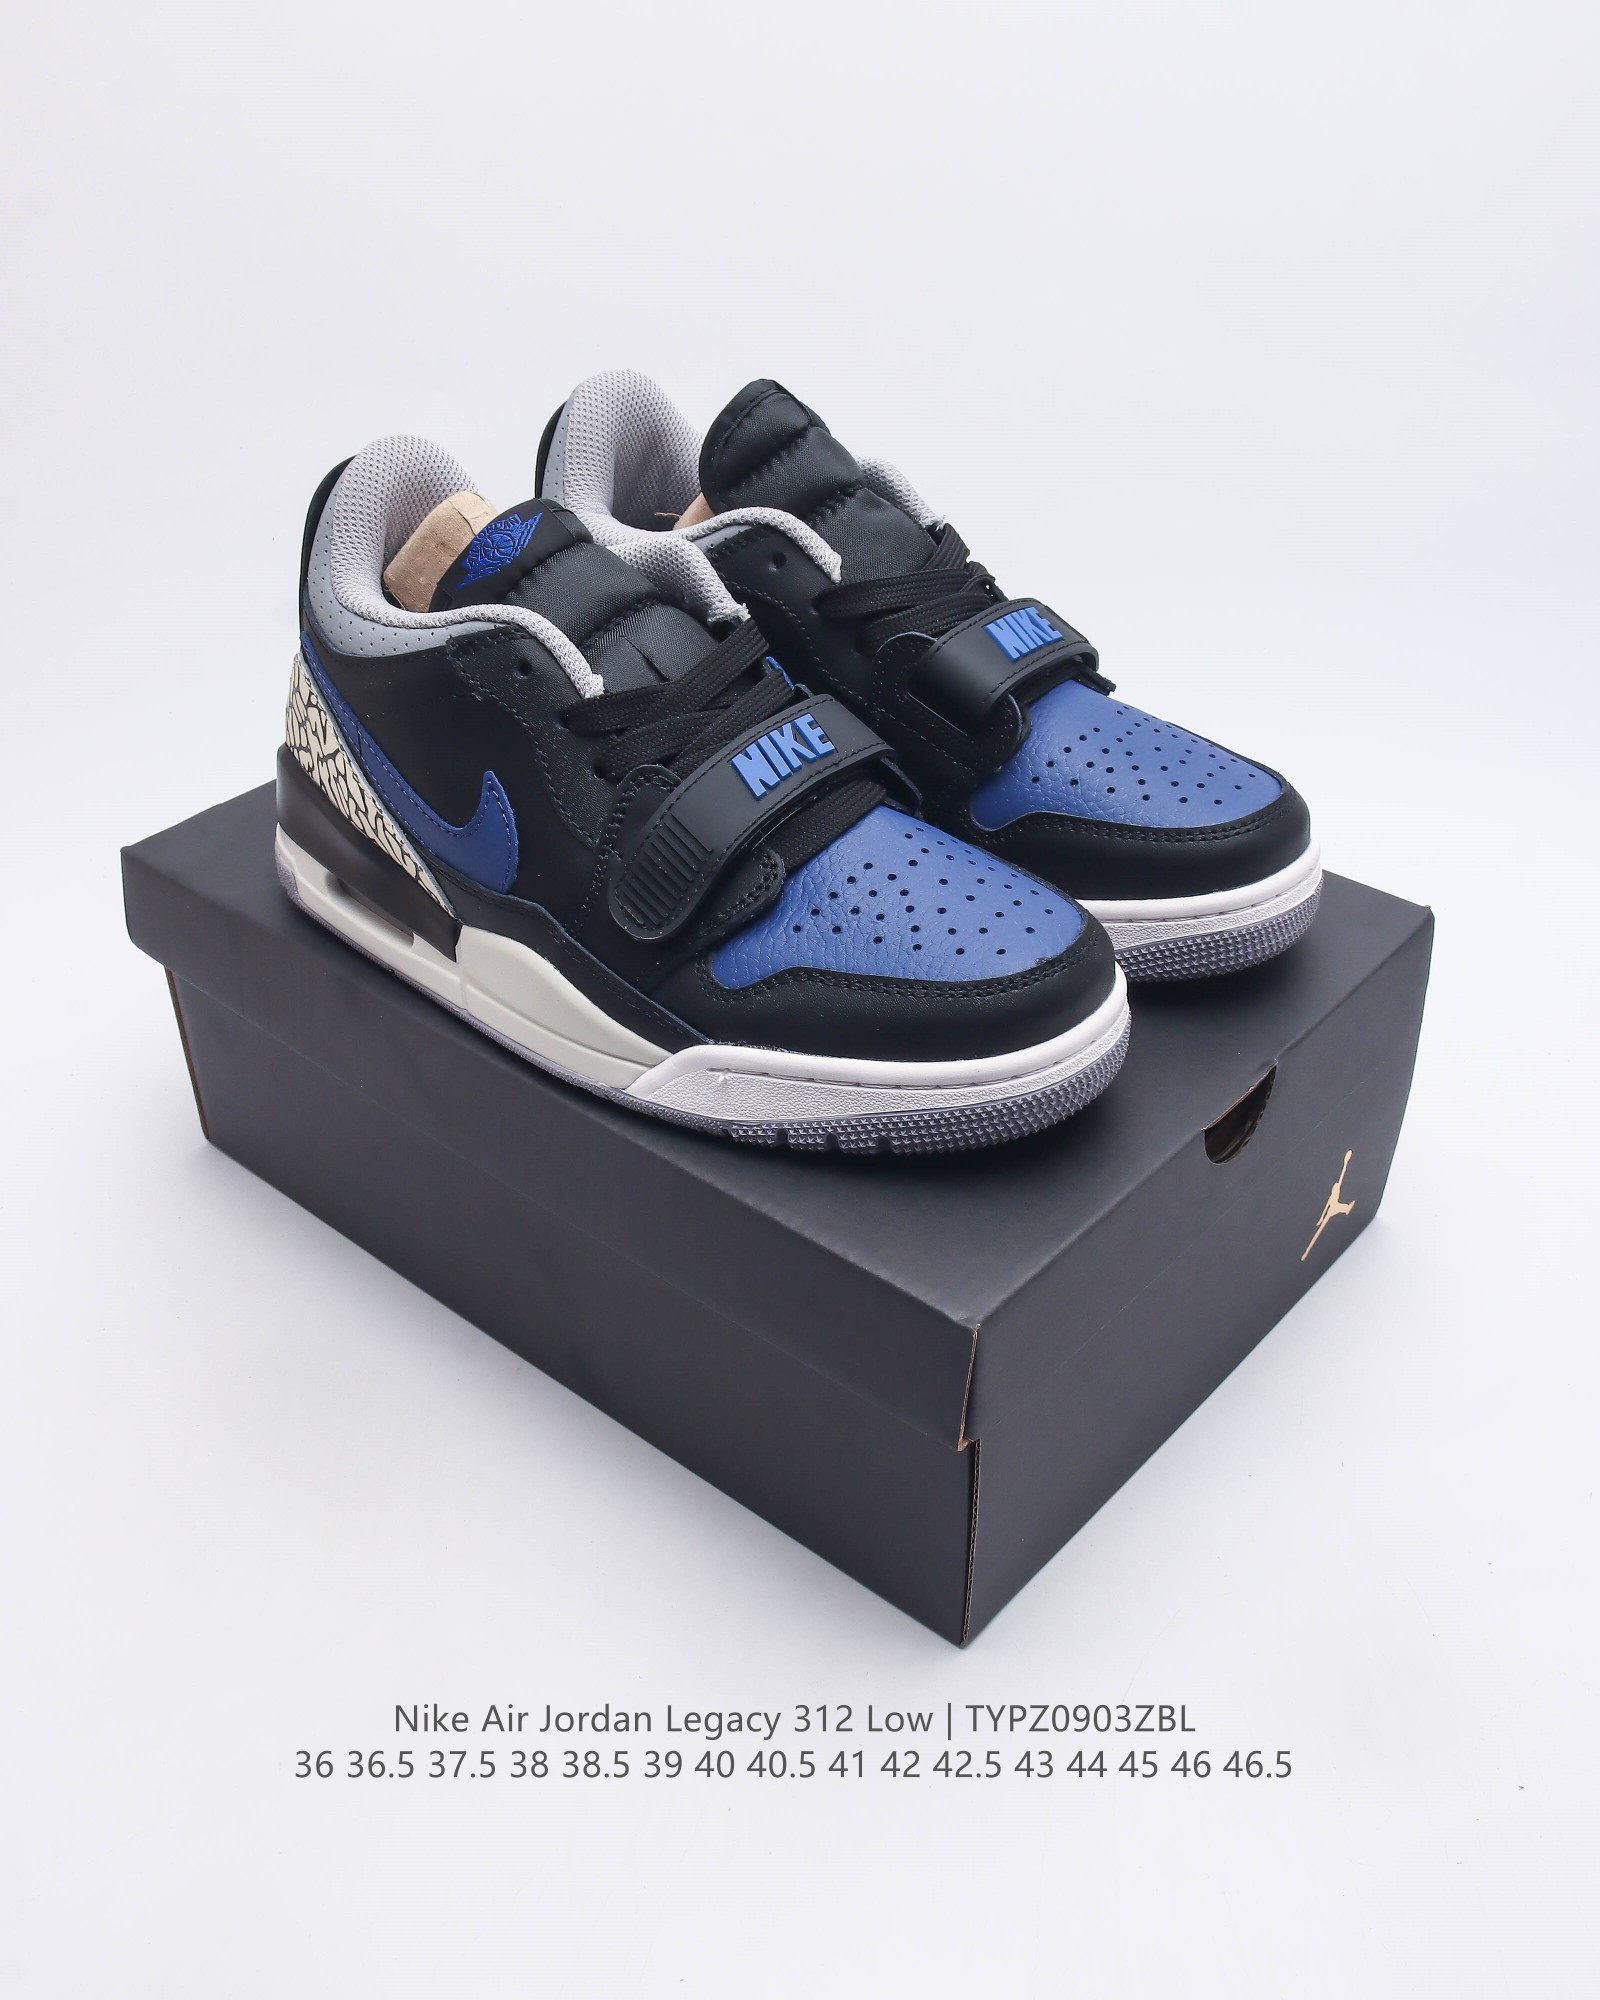 耐克 Aj 乔丹 Air Jordan Legacy 312 Low 低帮男女运动鞋百搭篮球鞋 有着交错结合的设计 它的名字就展现出它所包含的鞋款元素 312